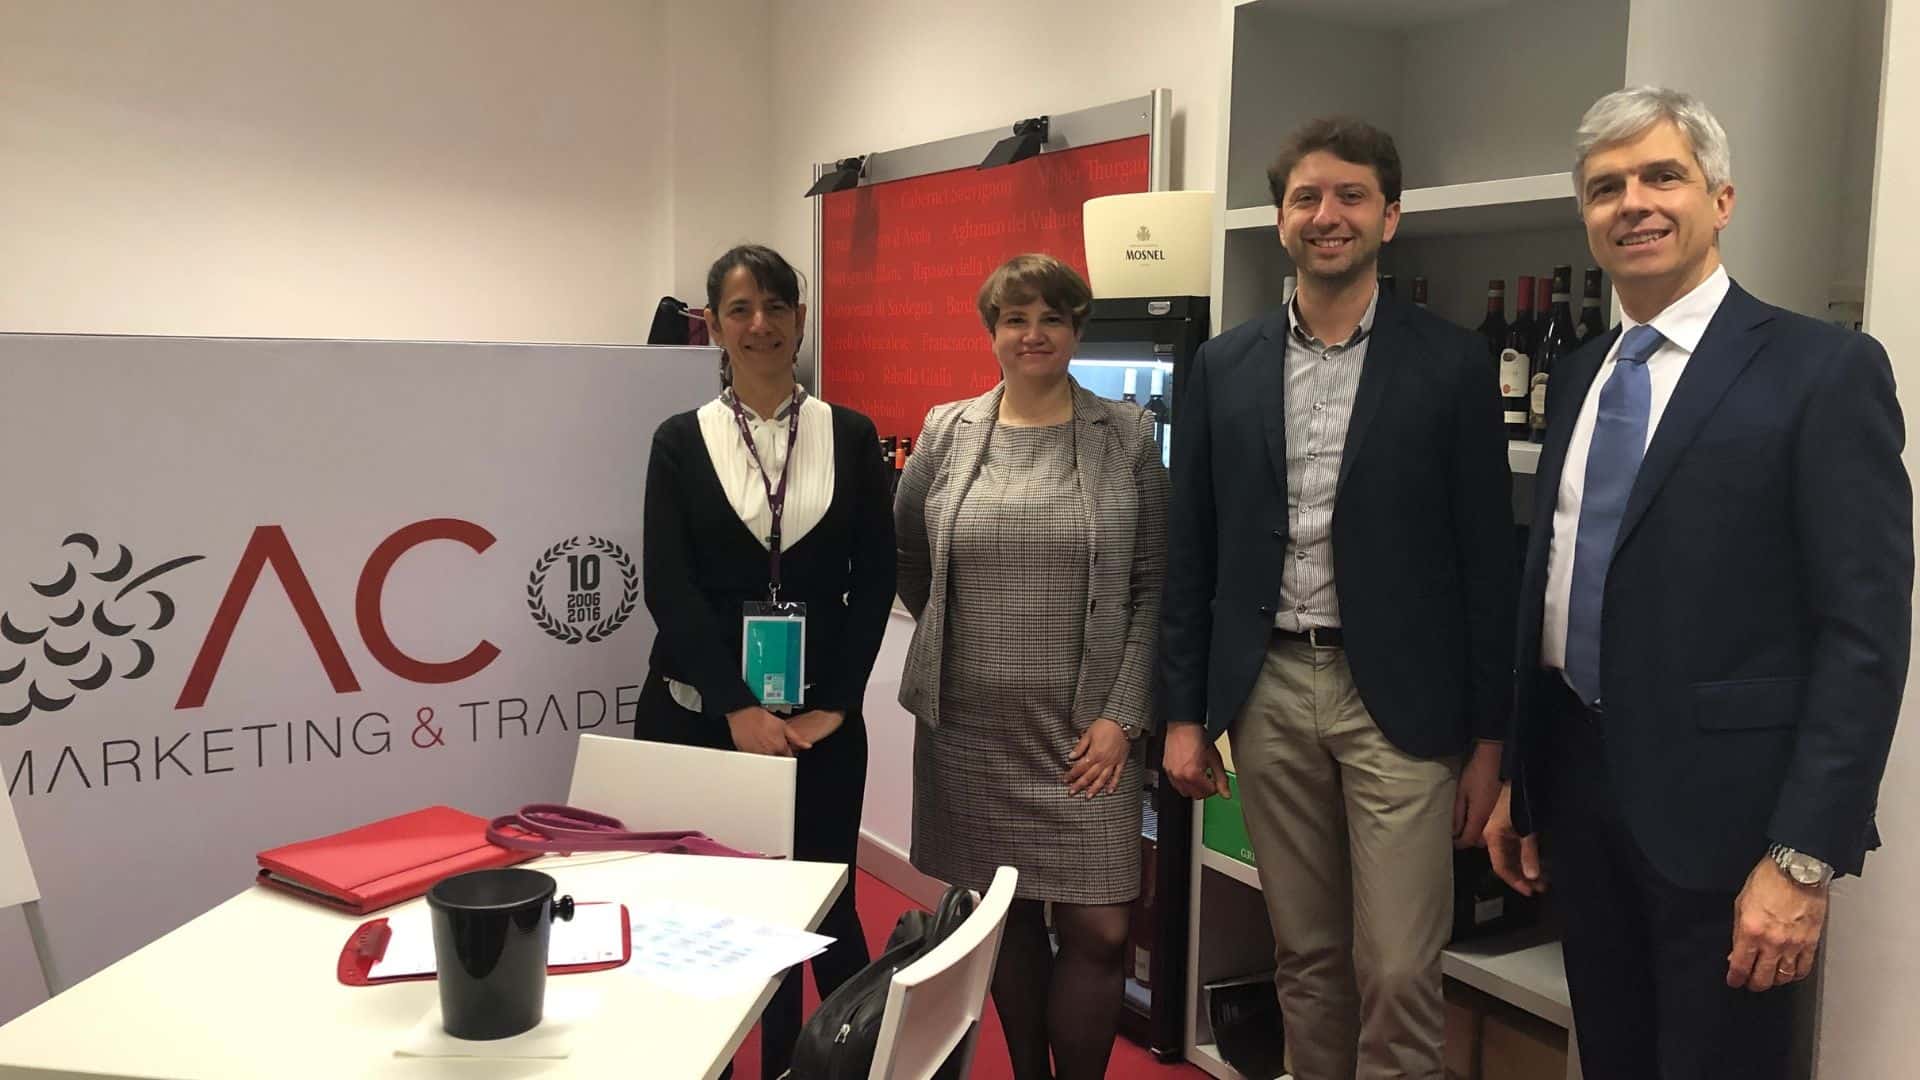 Il team di A.C. Marketing & Trade al Vinitaly 2019.